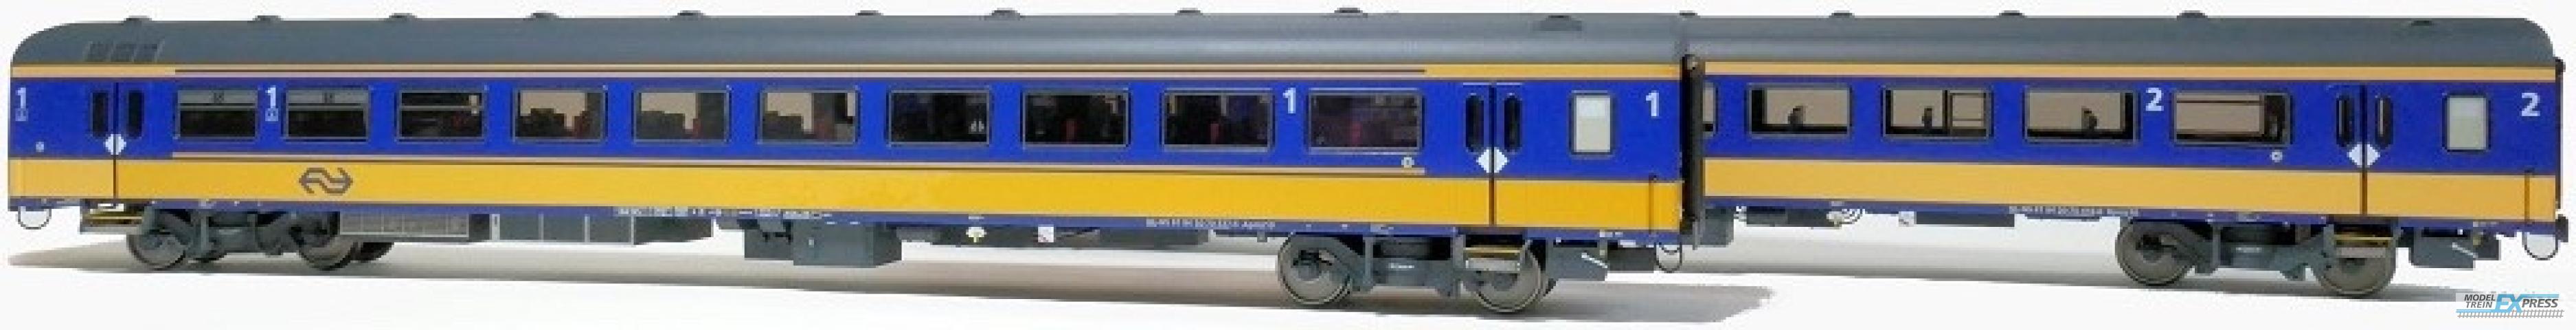 Exact-train 11003 2er-Set NS ICRm Den Haag -Eindhoven für den Inlandseinsatz Reisezugwagen Apmz10 und Reisezugwagen Bpmz10 ( Neue Farbe Gelb / Blau), Ep. VI